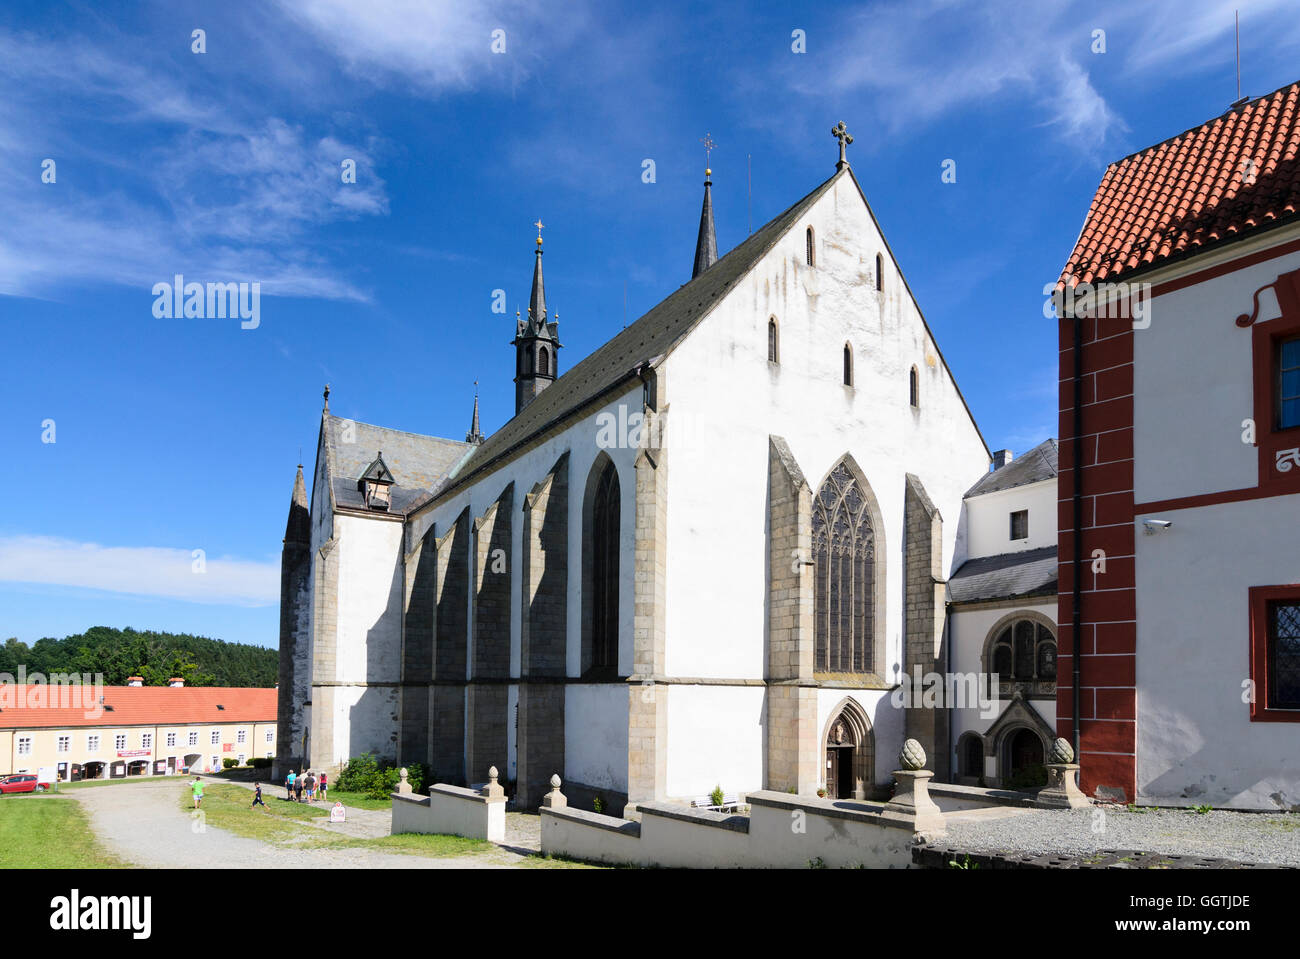 Vyssí Brod (Hohenfurth): Zisterzienserkloster, Jihocesky, Südböhmen, Tschechien, Südböhmen, Stockfoto